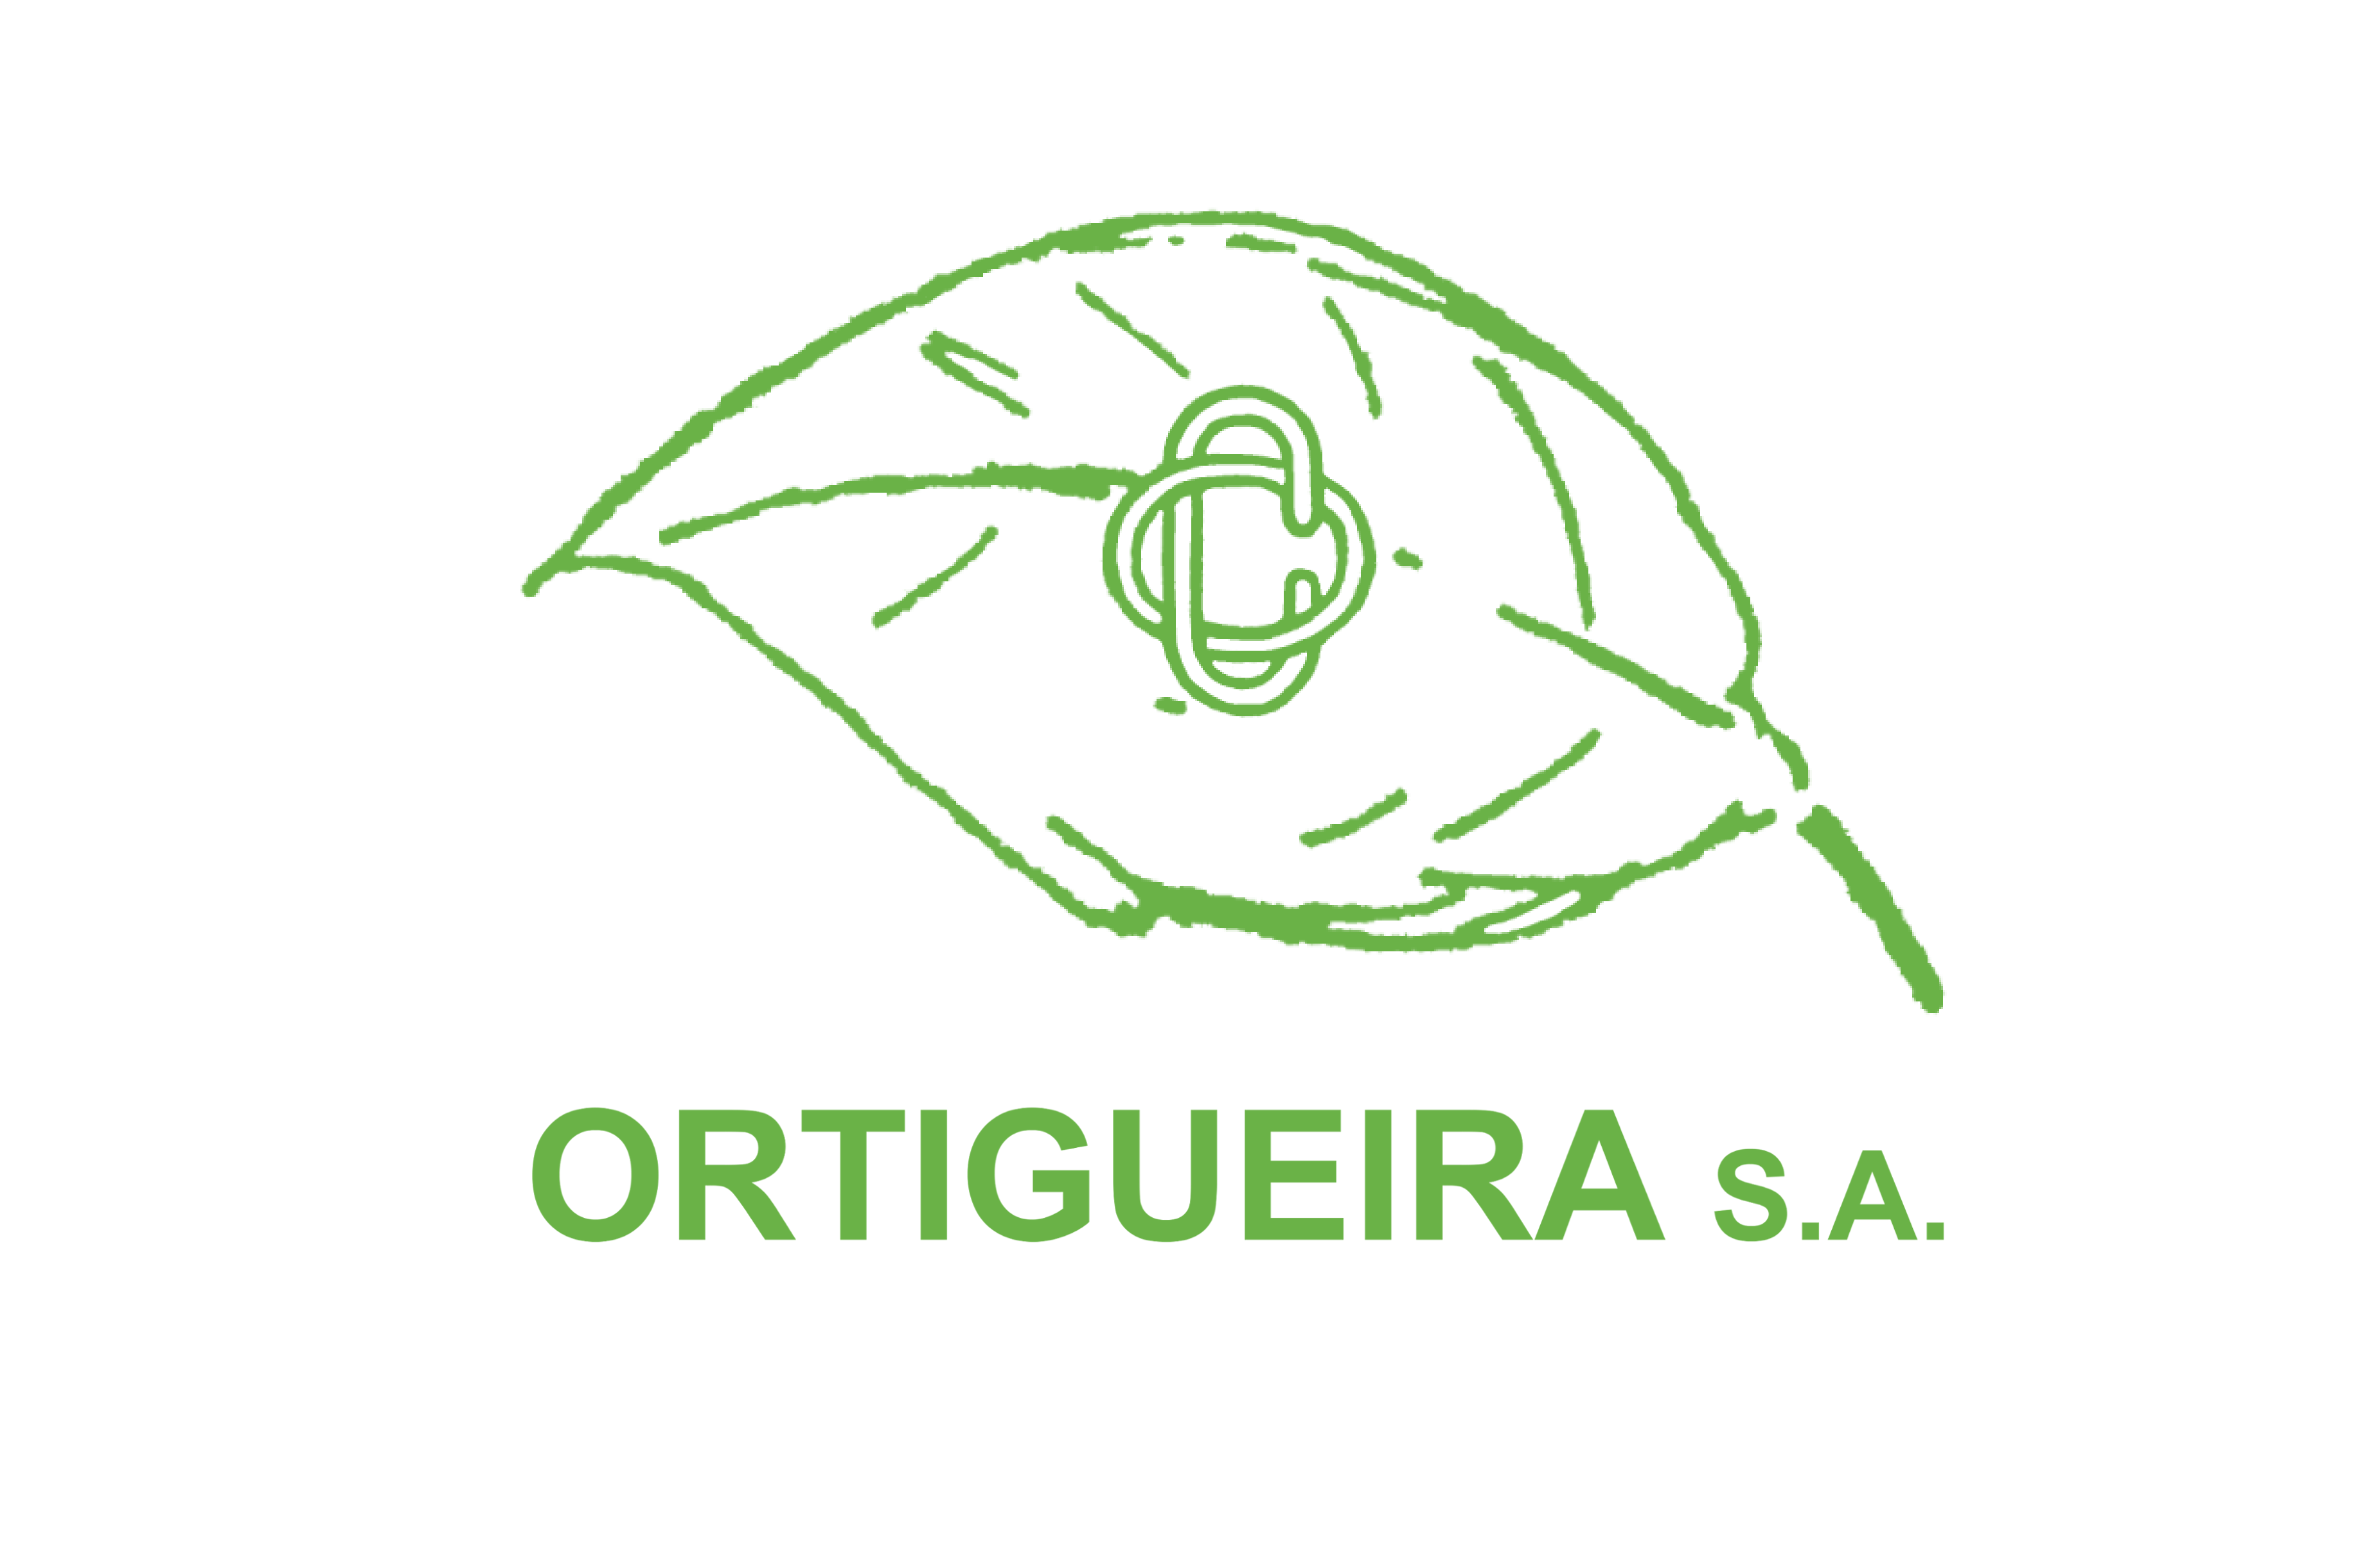 Ortigueira